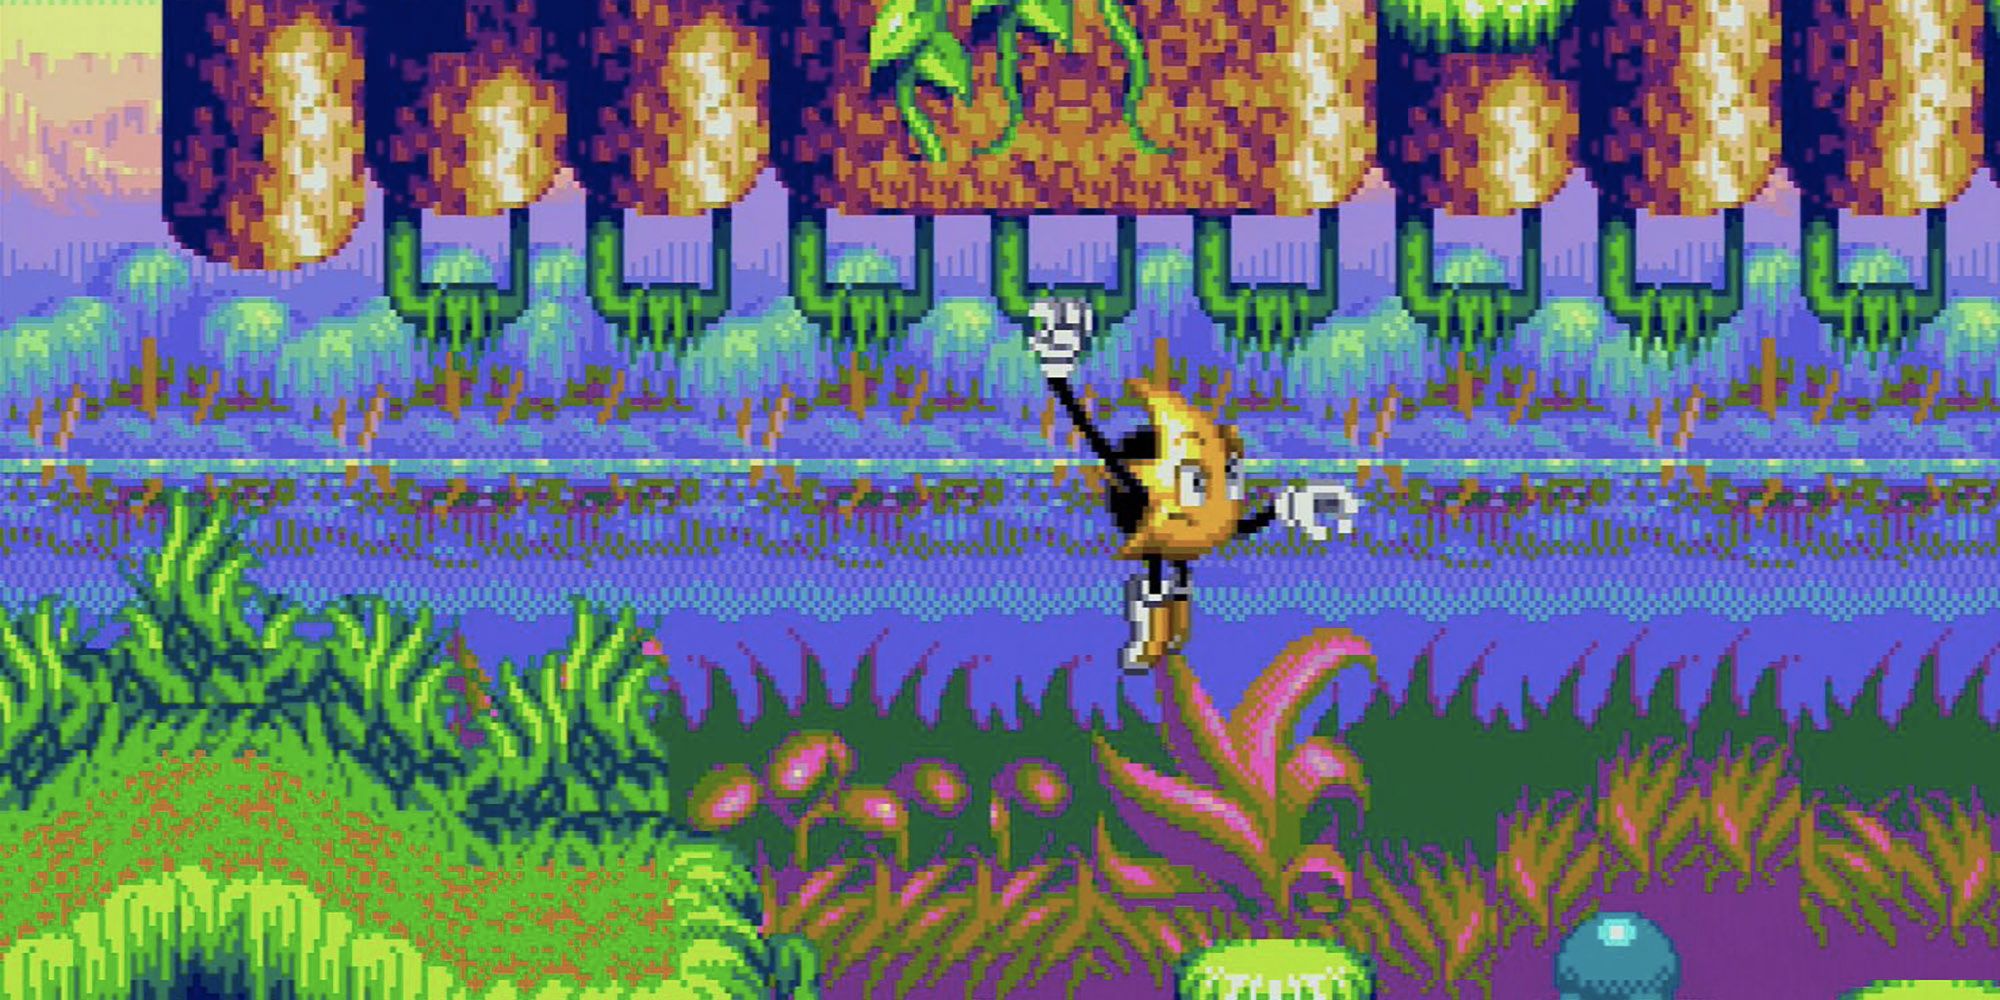 Ristar explores the jungle in the Sega Genesis game, Ristar